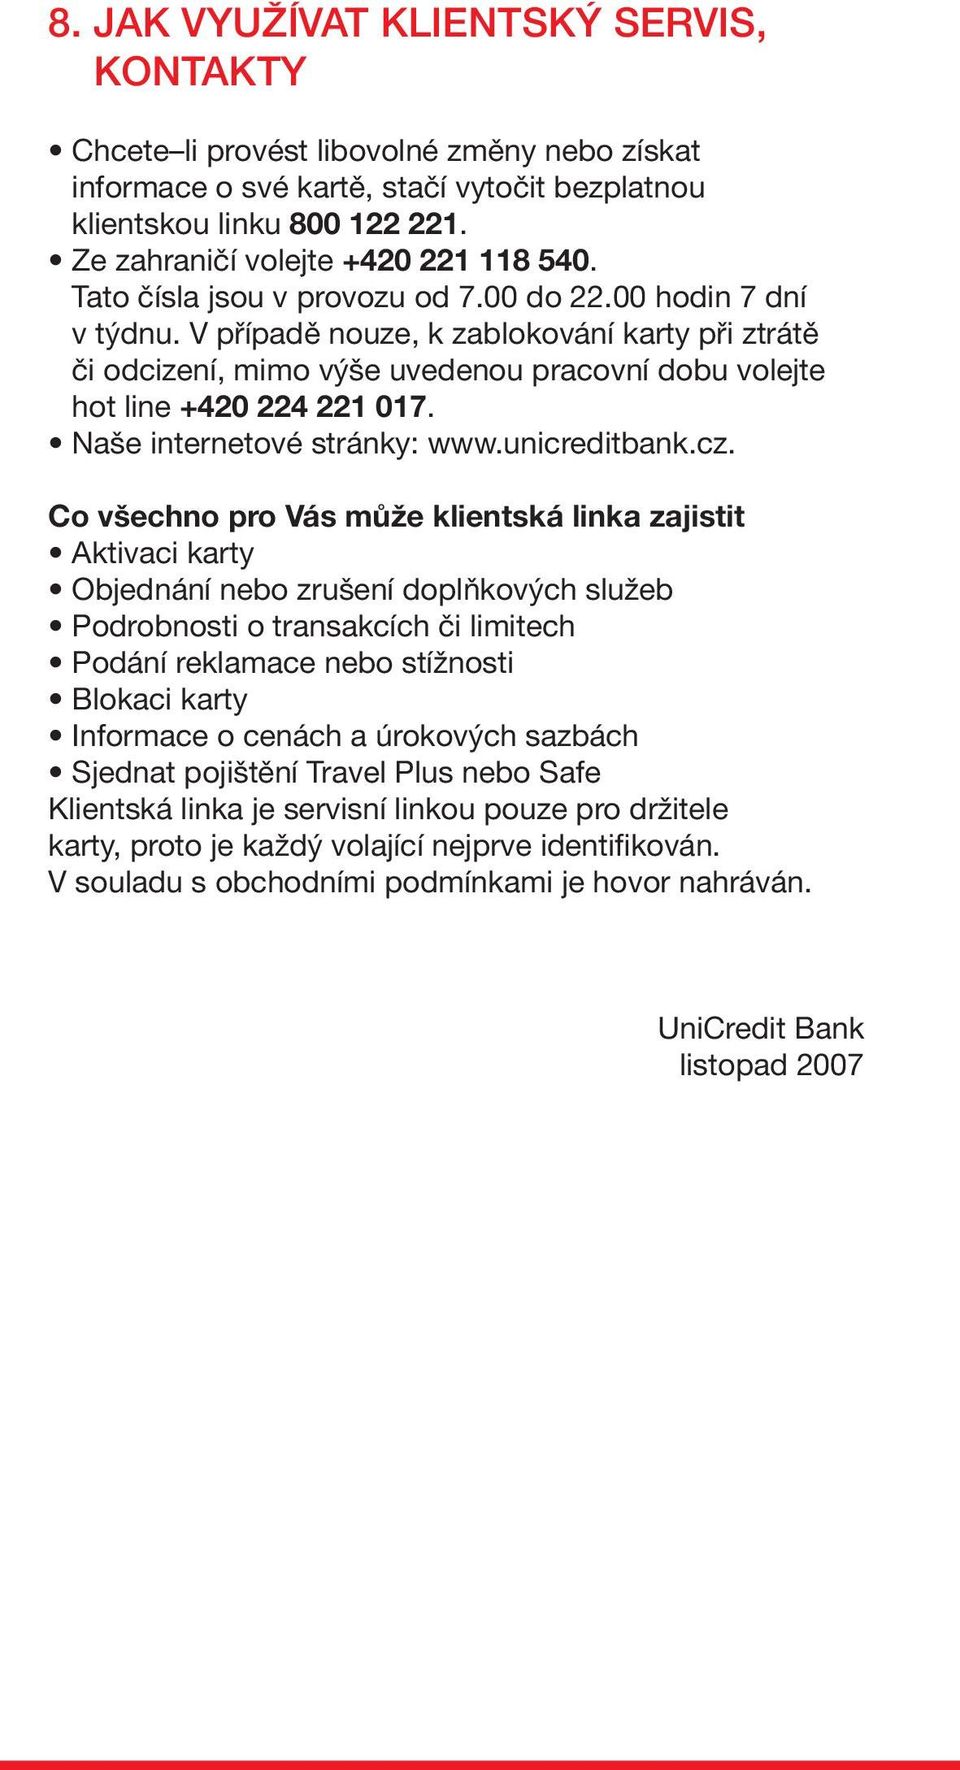 V případě nouze, k zablokování karty při ztrátě či odcizení, mimo výše uvedenou pracovní dobu volejte hot line +420 224 221 017. Naše internetové stránky: www.unicreditbank.cz.